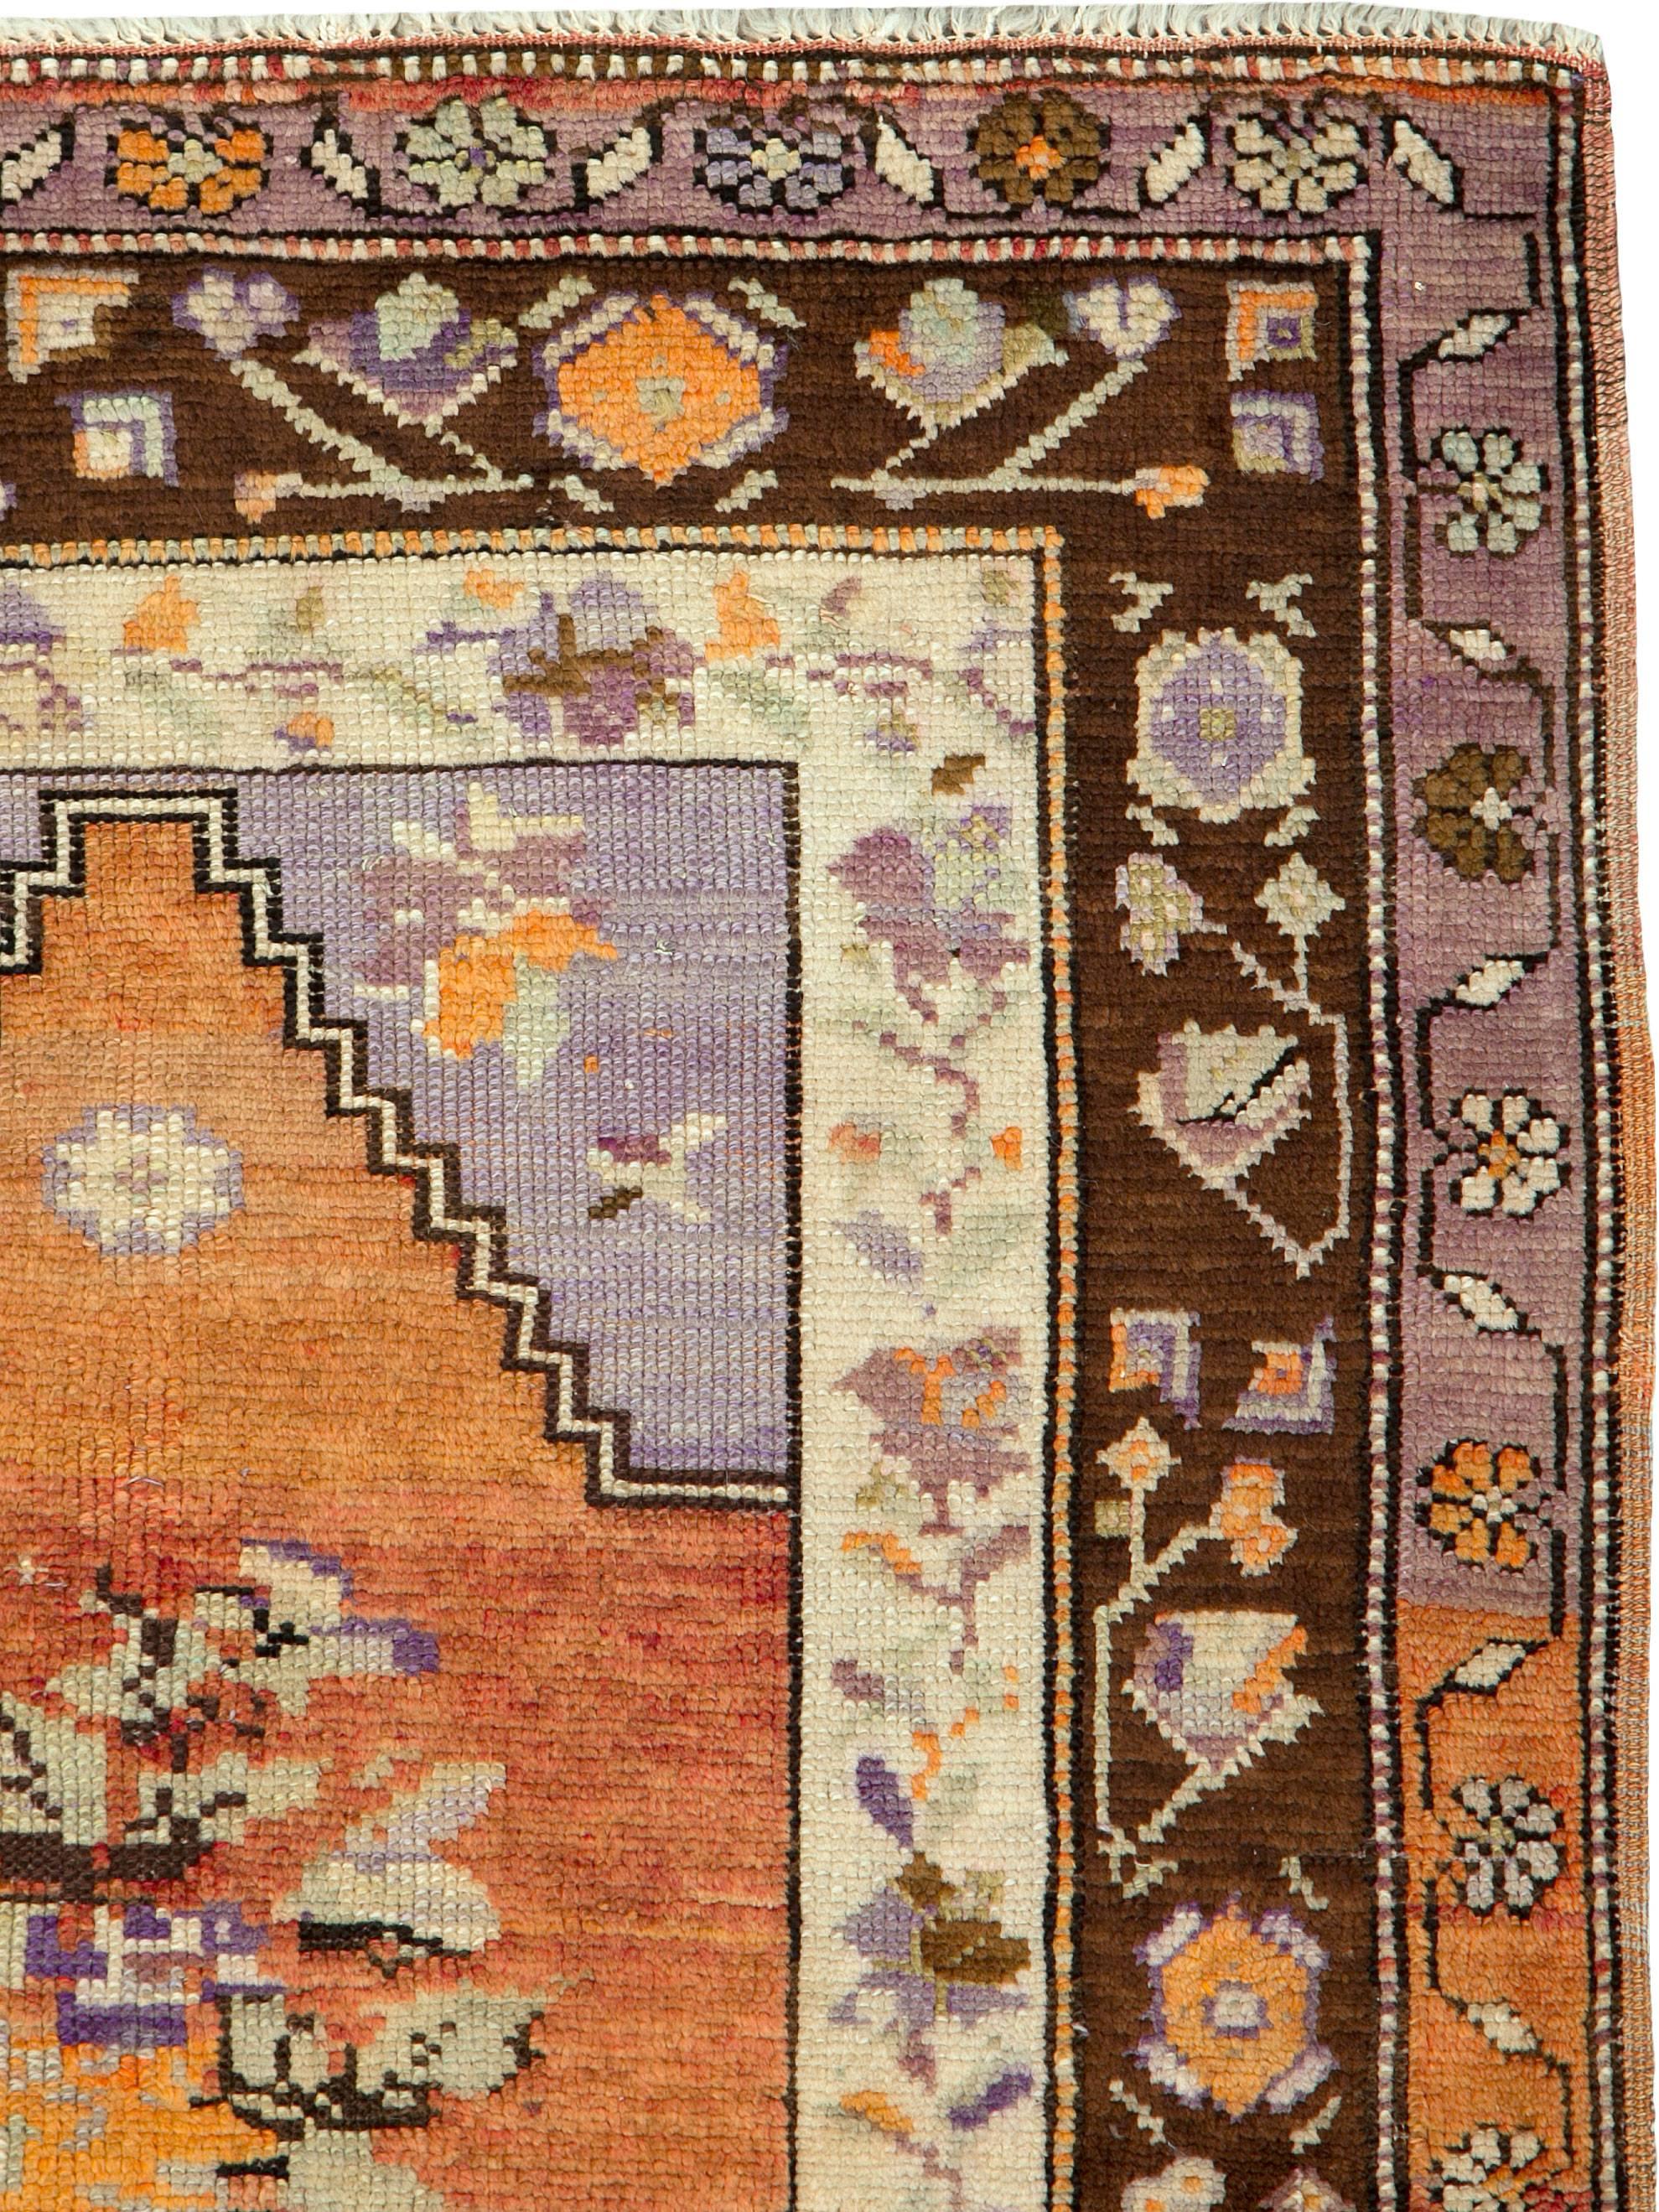 Ein alter türkisch-anatolischer Teppich aus dem zweiten Viertel des 20. Jahrhunderts.